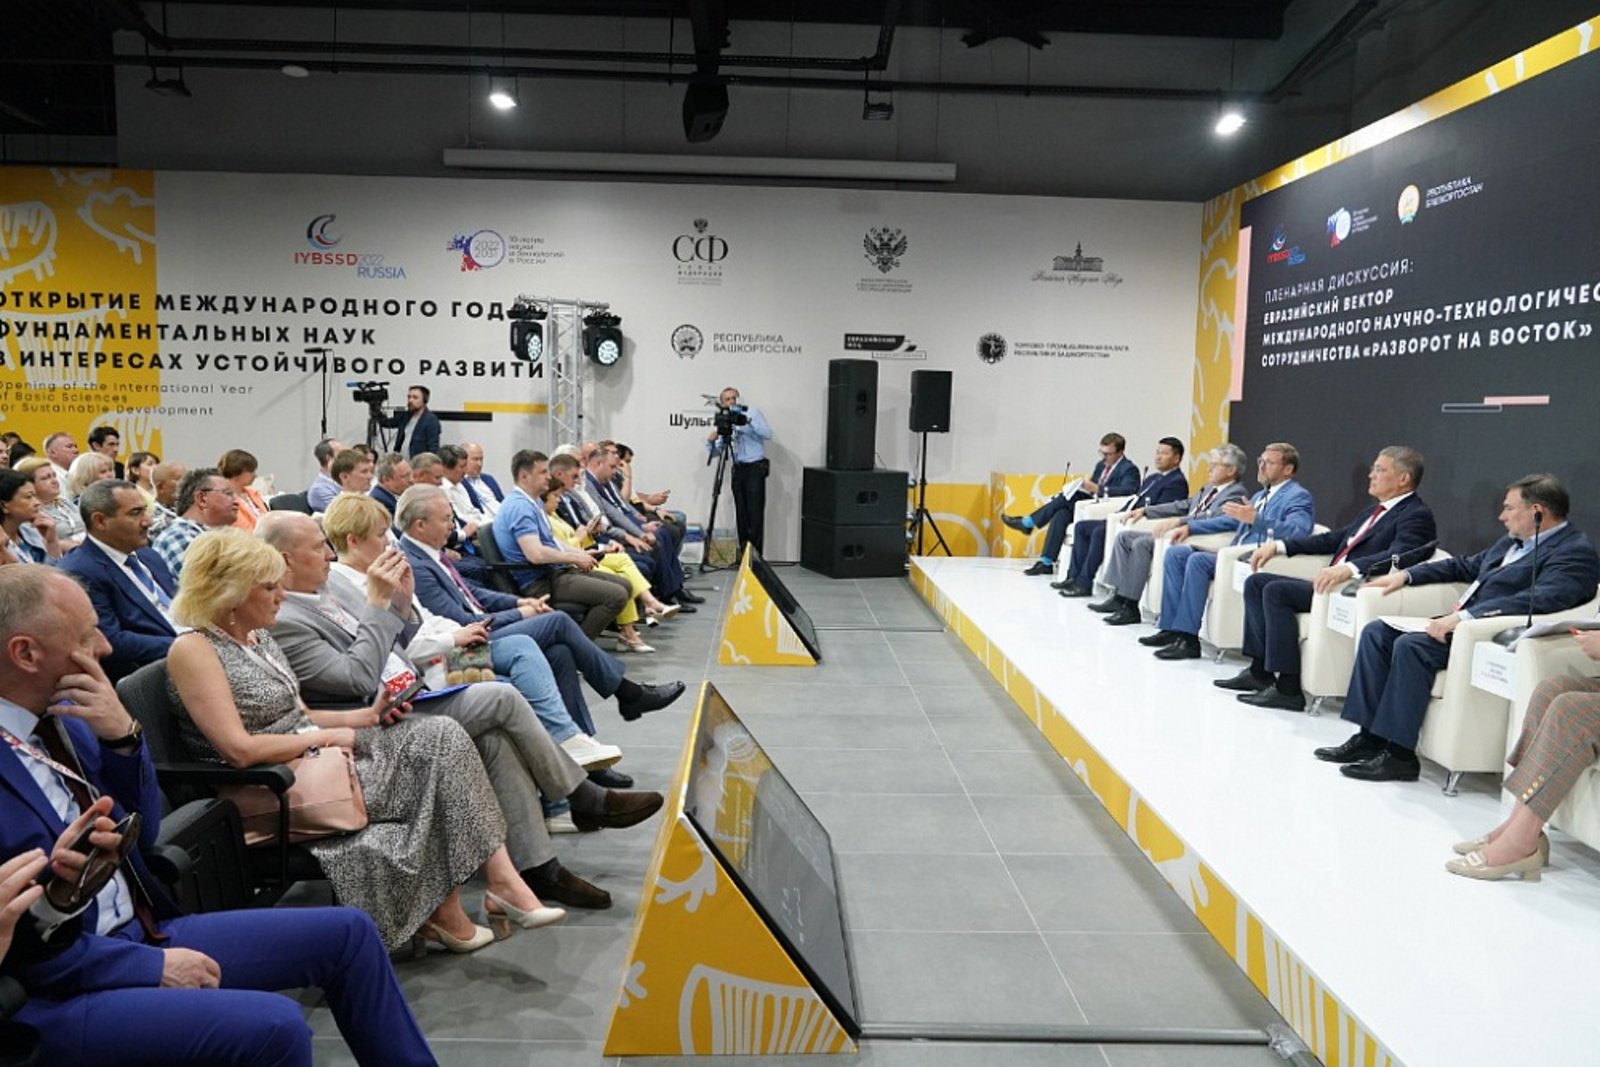 Радий Хабиров выступил на пленарной сессии в рамках открытия в России Международного года фундаментальных наук